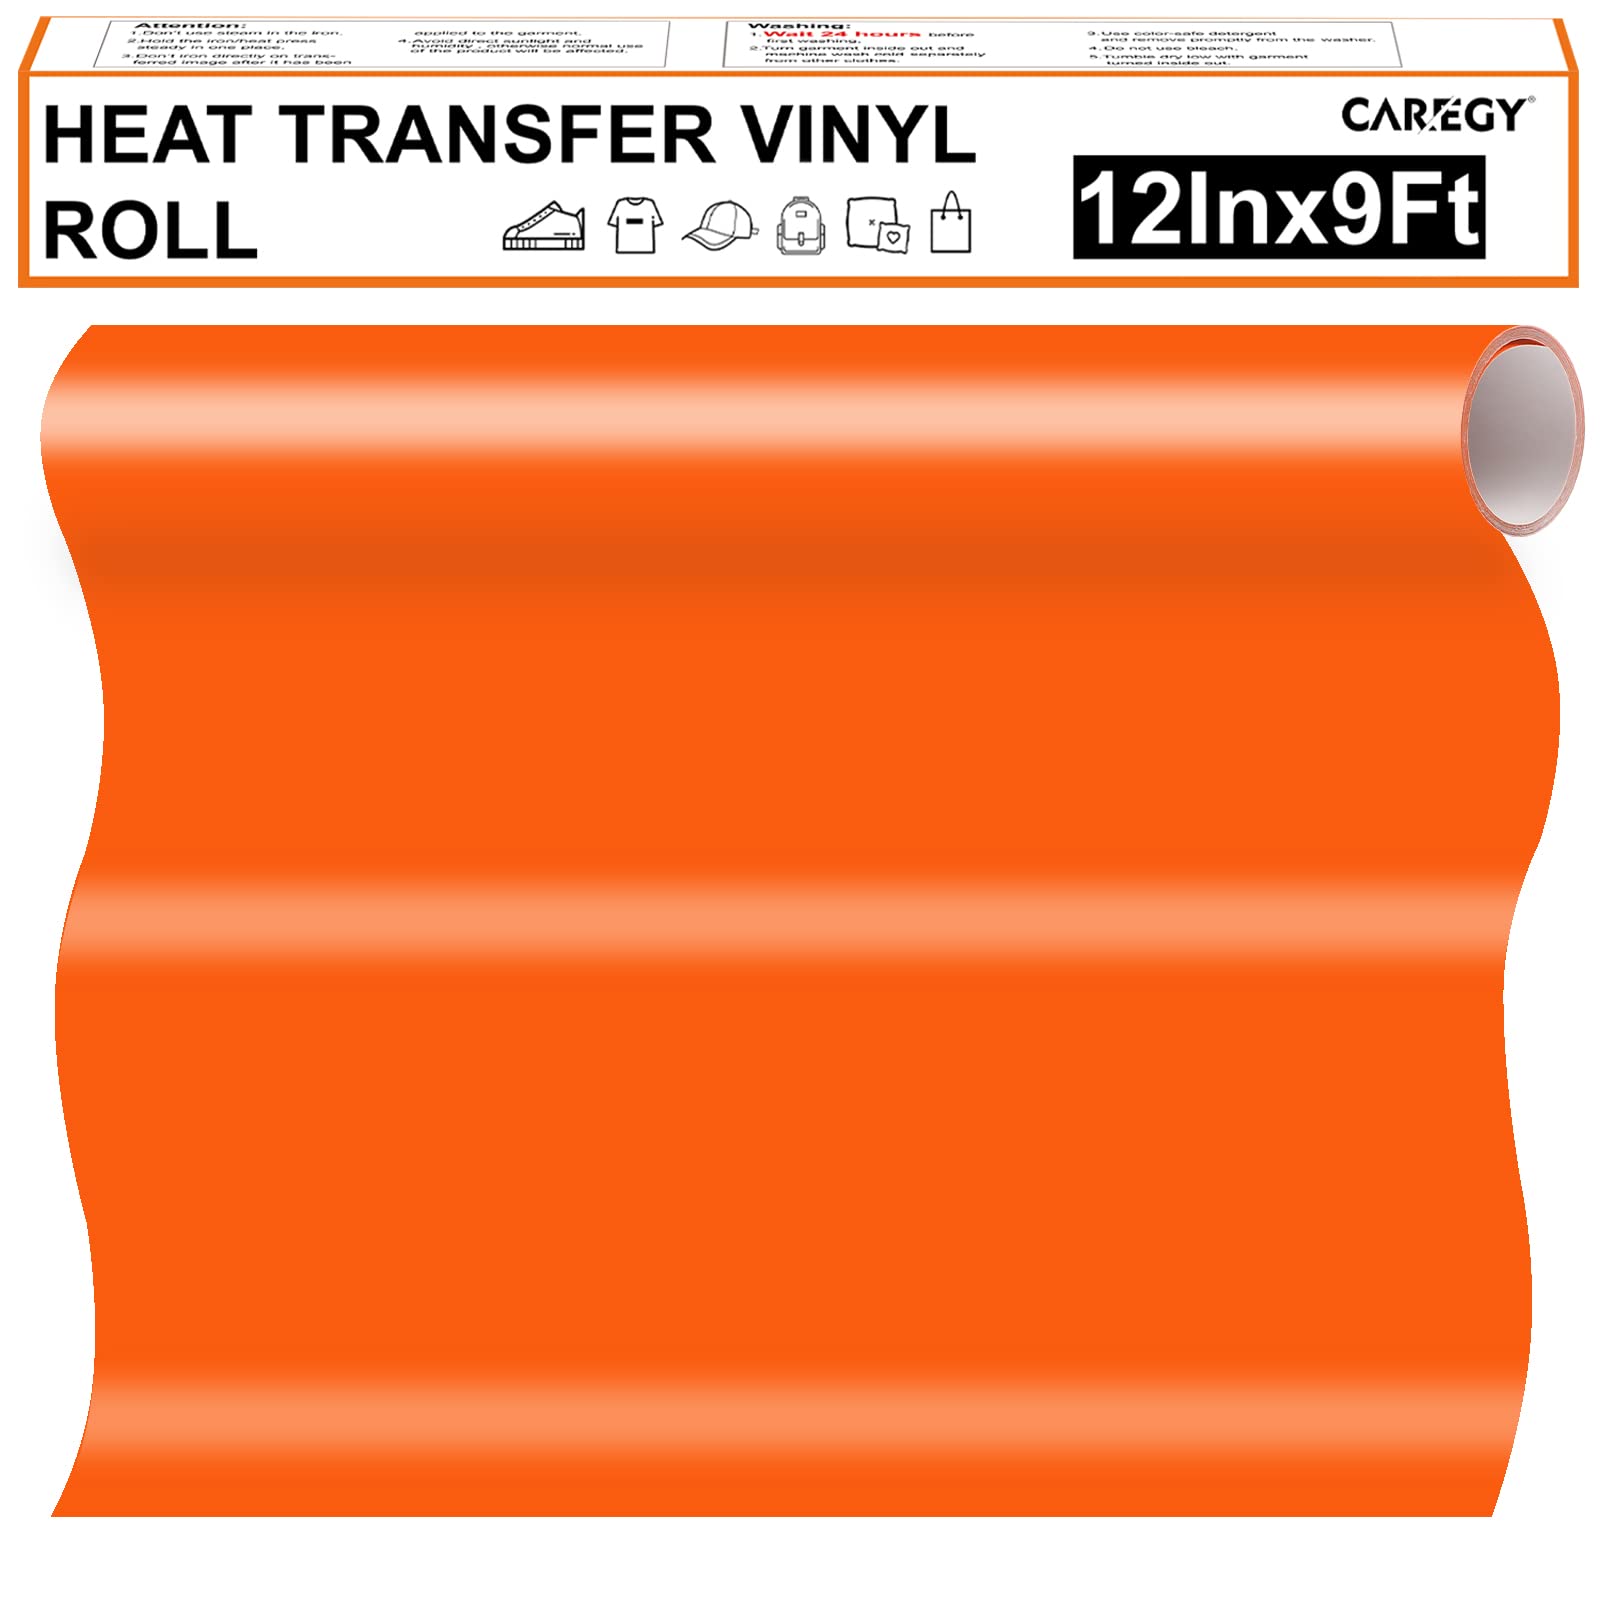 CAREGY Iron on Vinyl Heat Transfer Vinyl Roll HTV (12''x9' Orange)